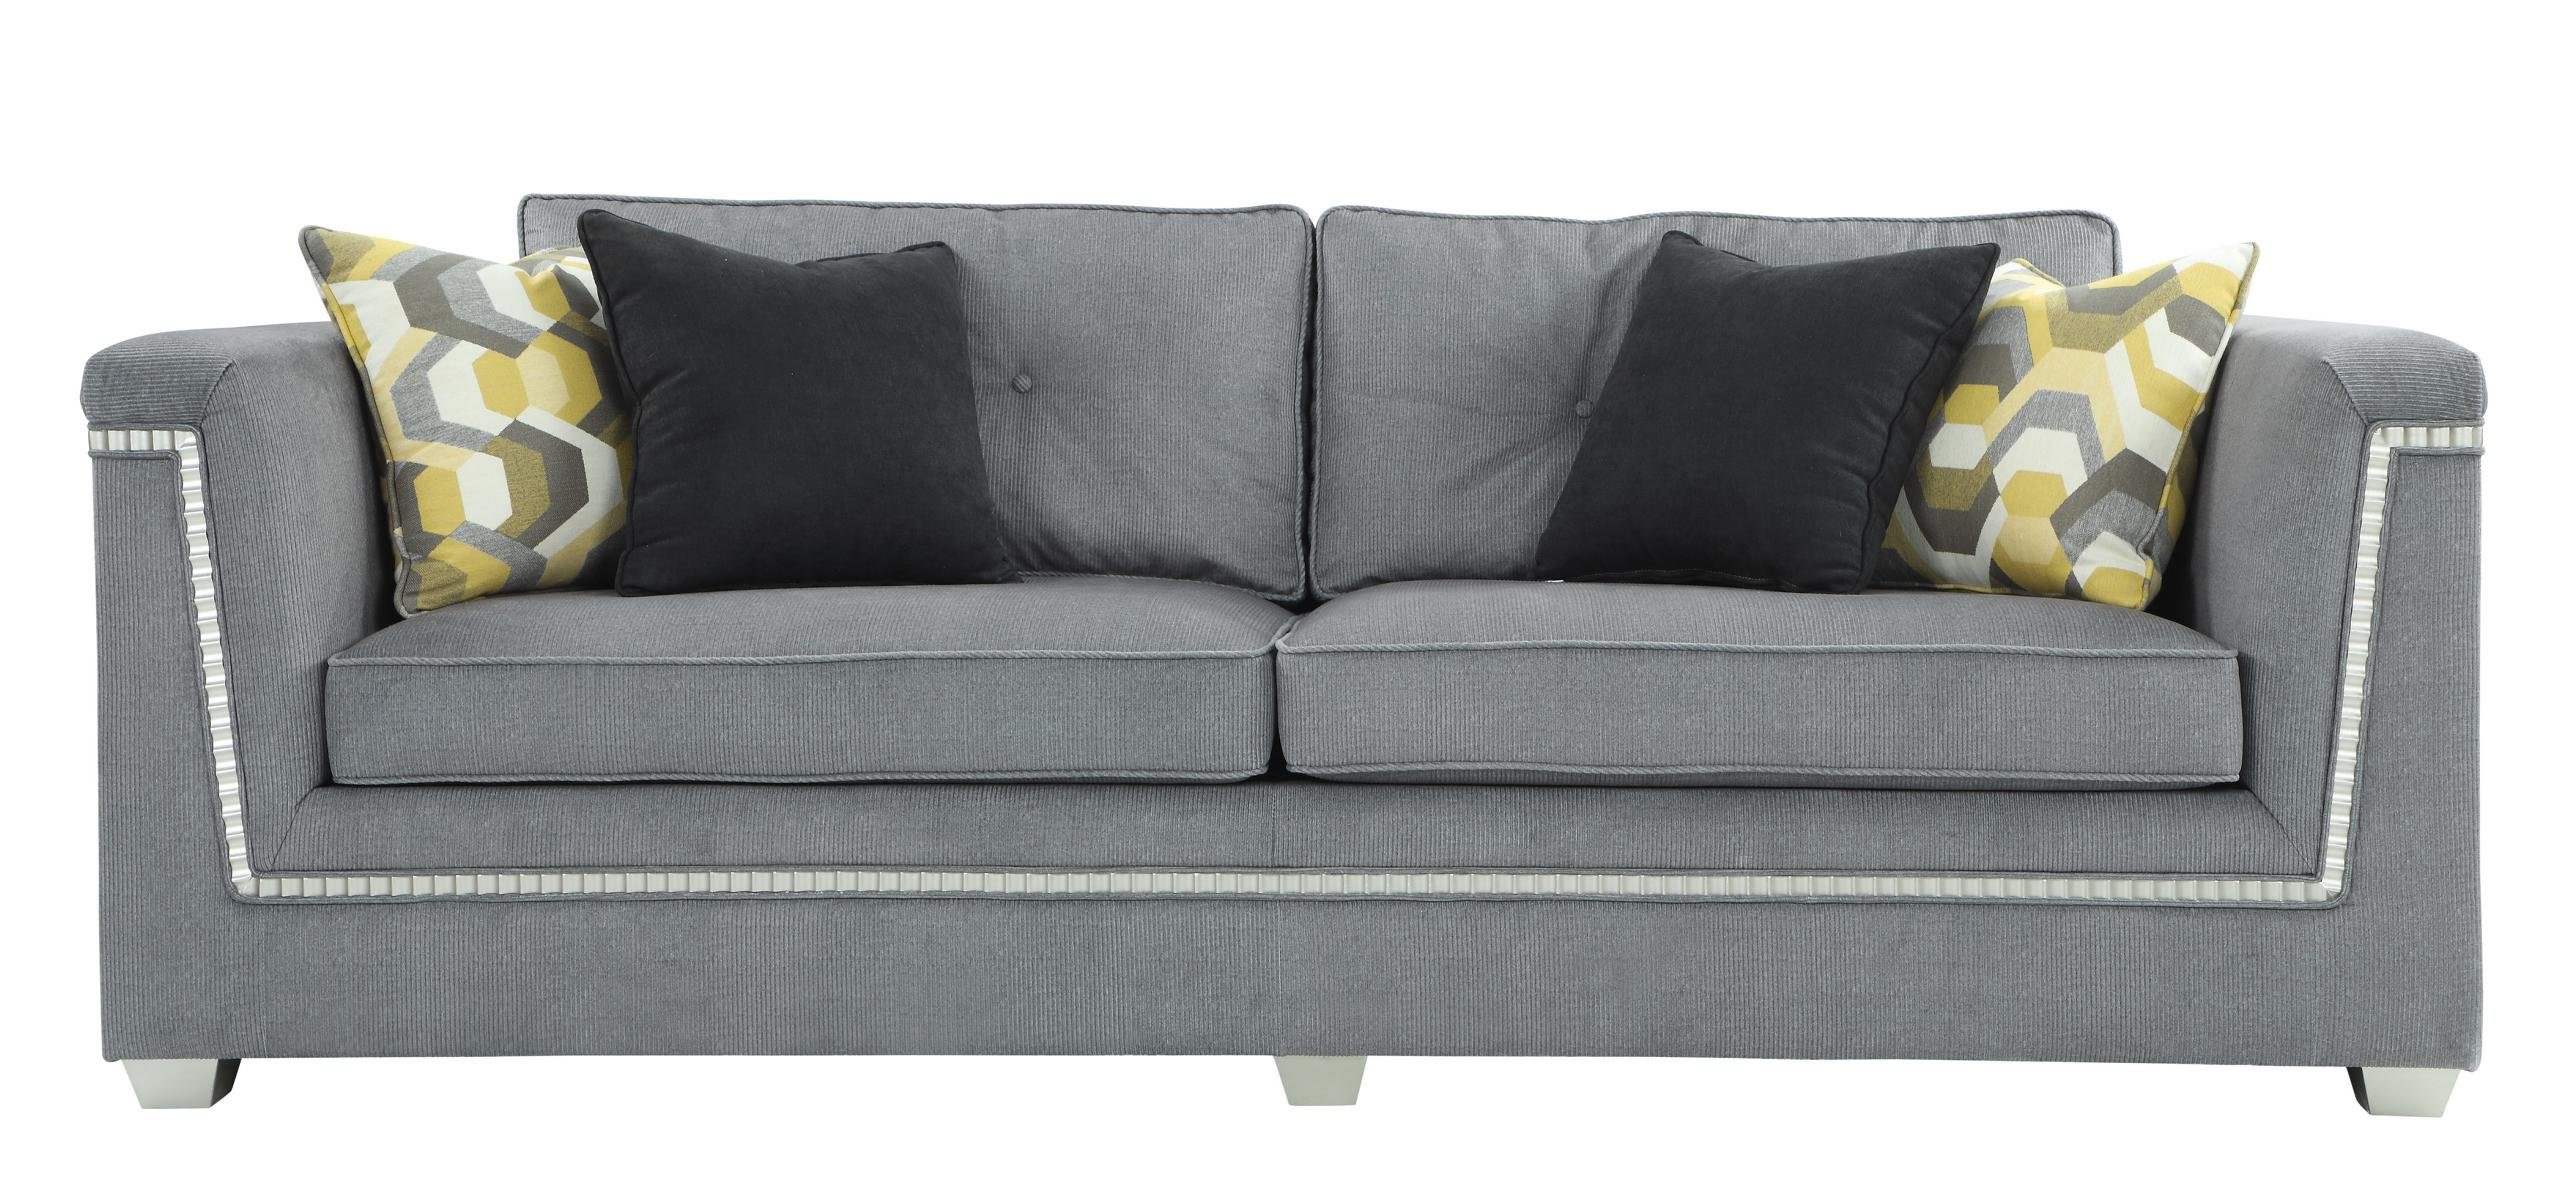 JVmoebel Sofa in 3+1 Polstermöbel Textil Sofagarnitur Wohnzimmer Graue Couchen, Made Europe